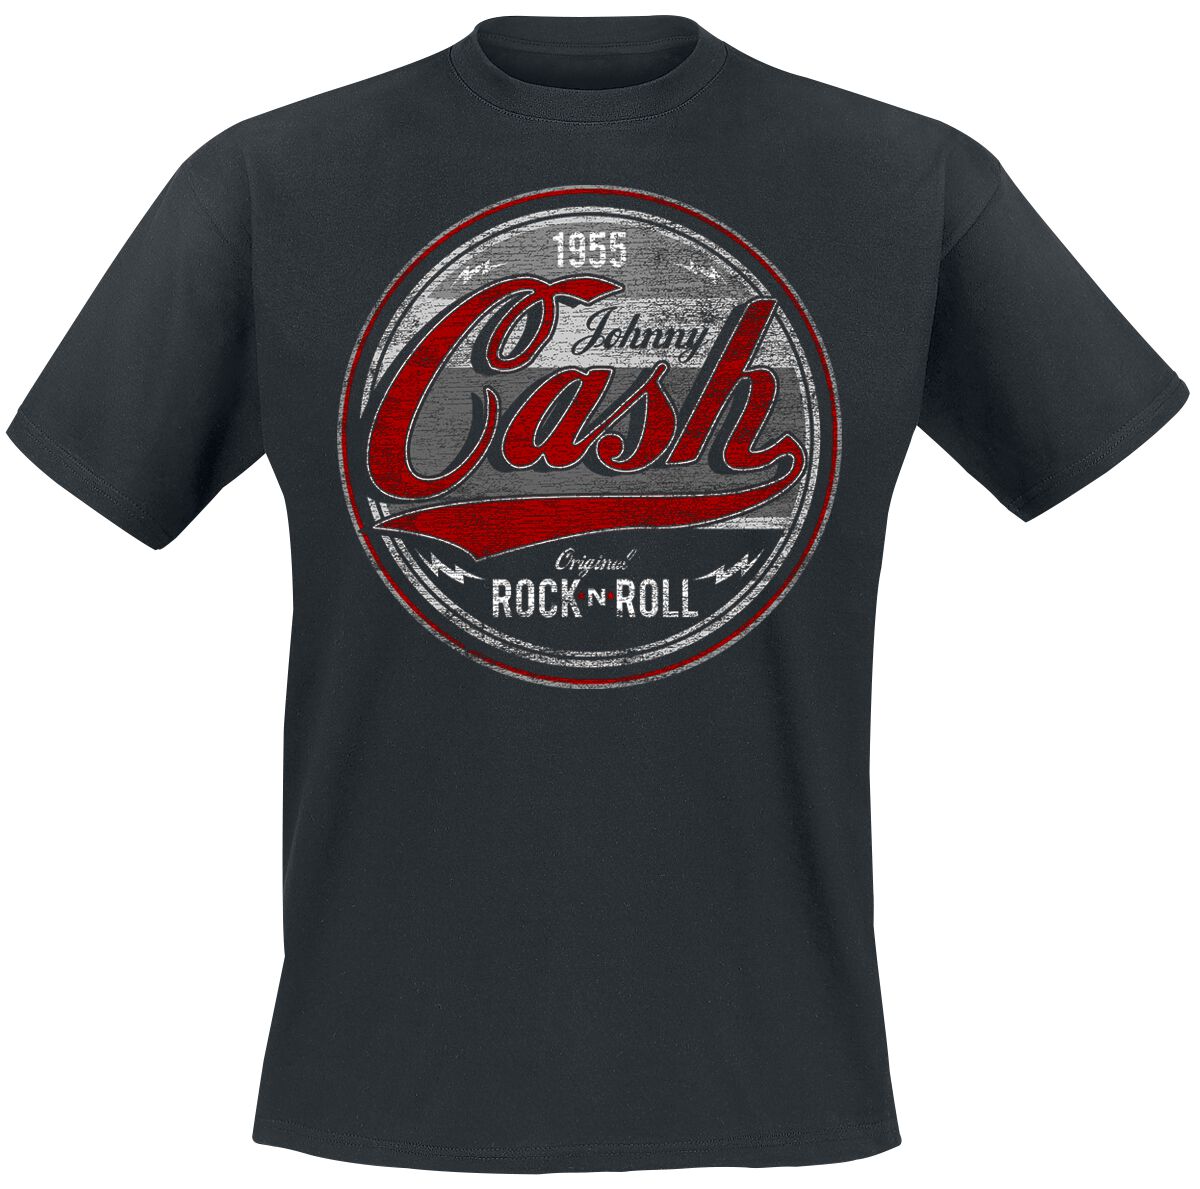 Johnny Cash T-Shirt - Original Rock n Roll Red/Grey - S bis 4XL - für Männer - Größe XL - schwarz  - Lizenziertes Merchandise!